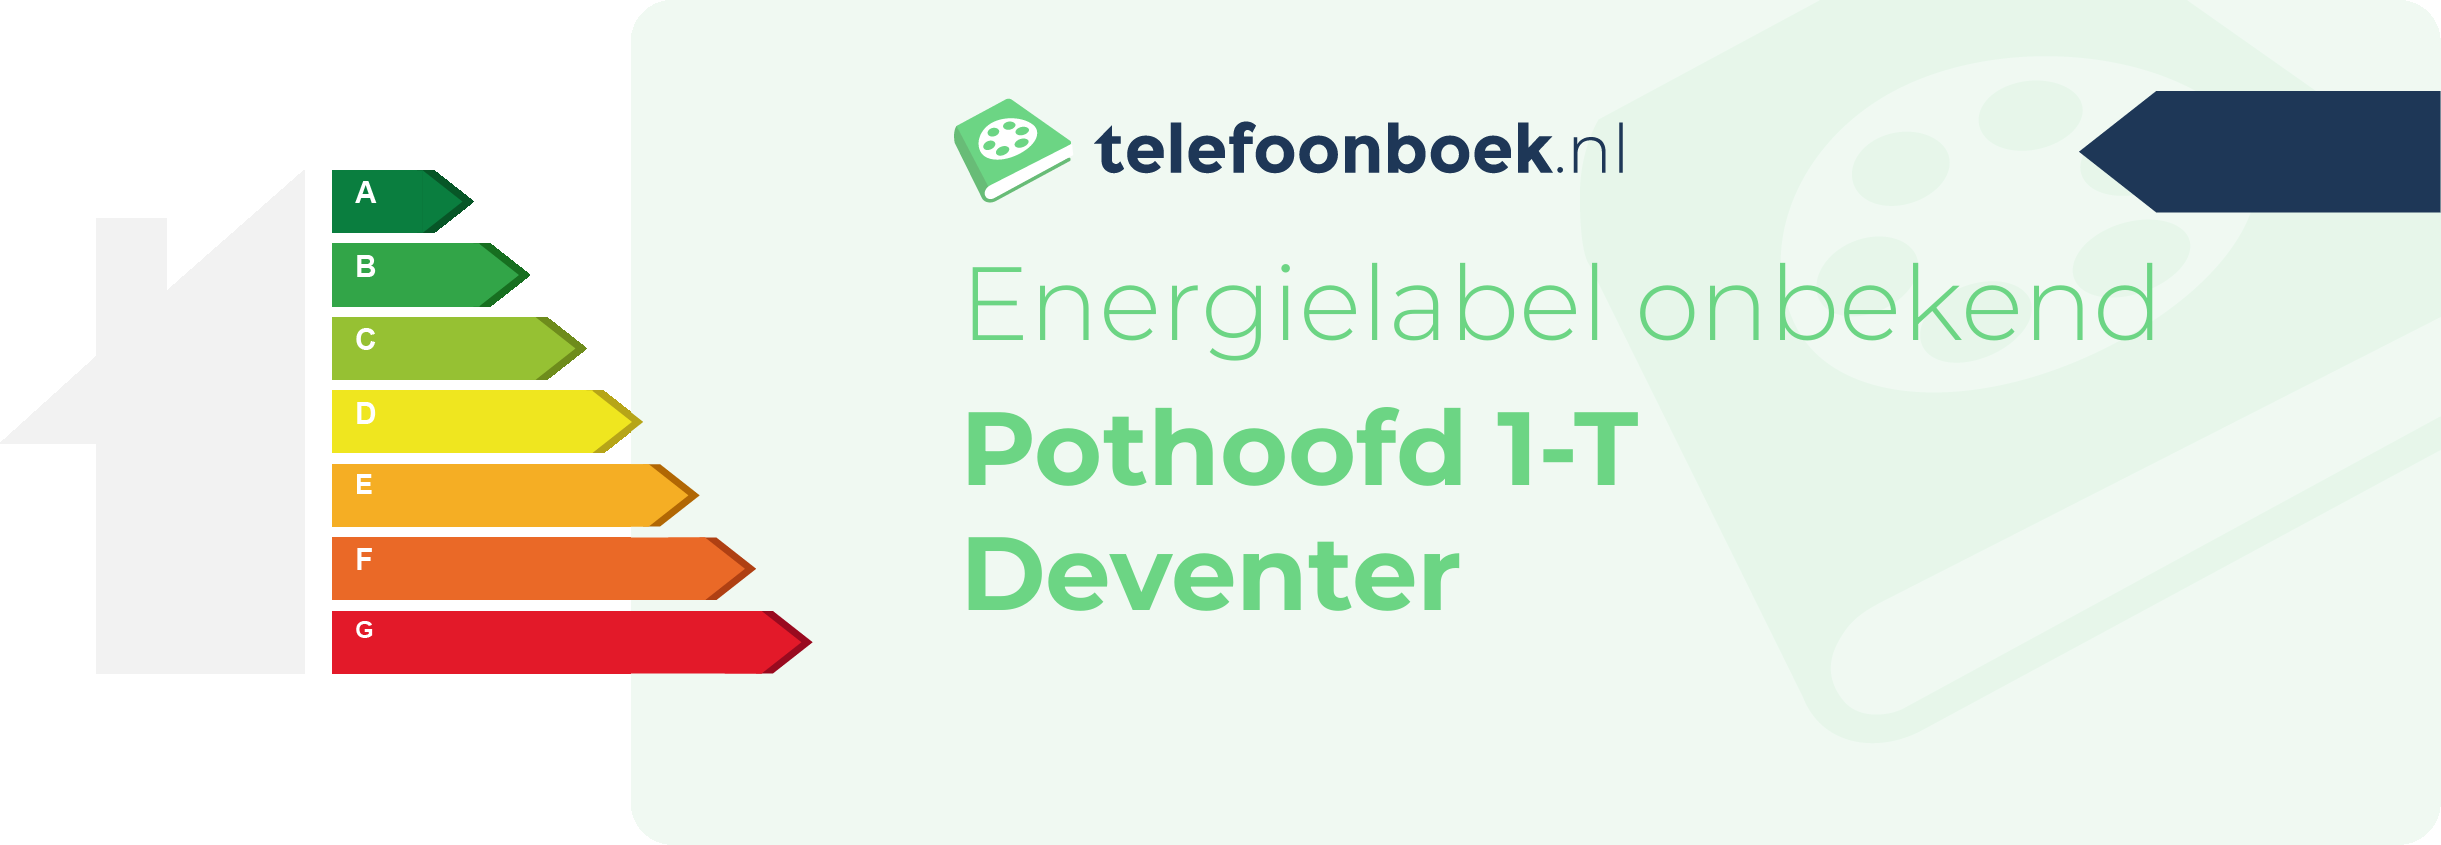 Energielabel Pothoofd 1-T Deventer